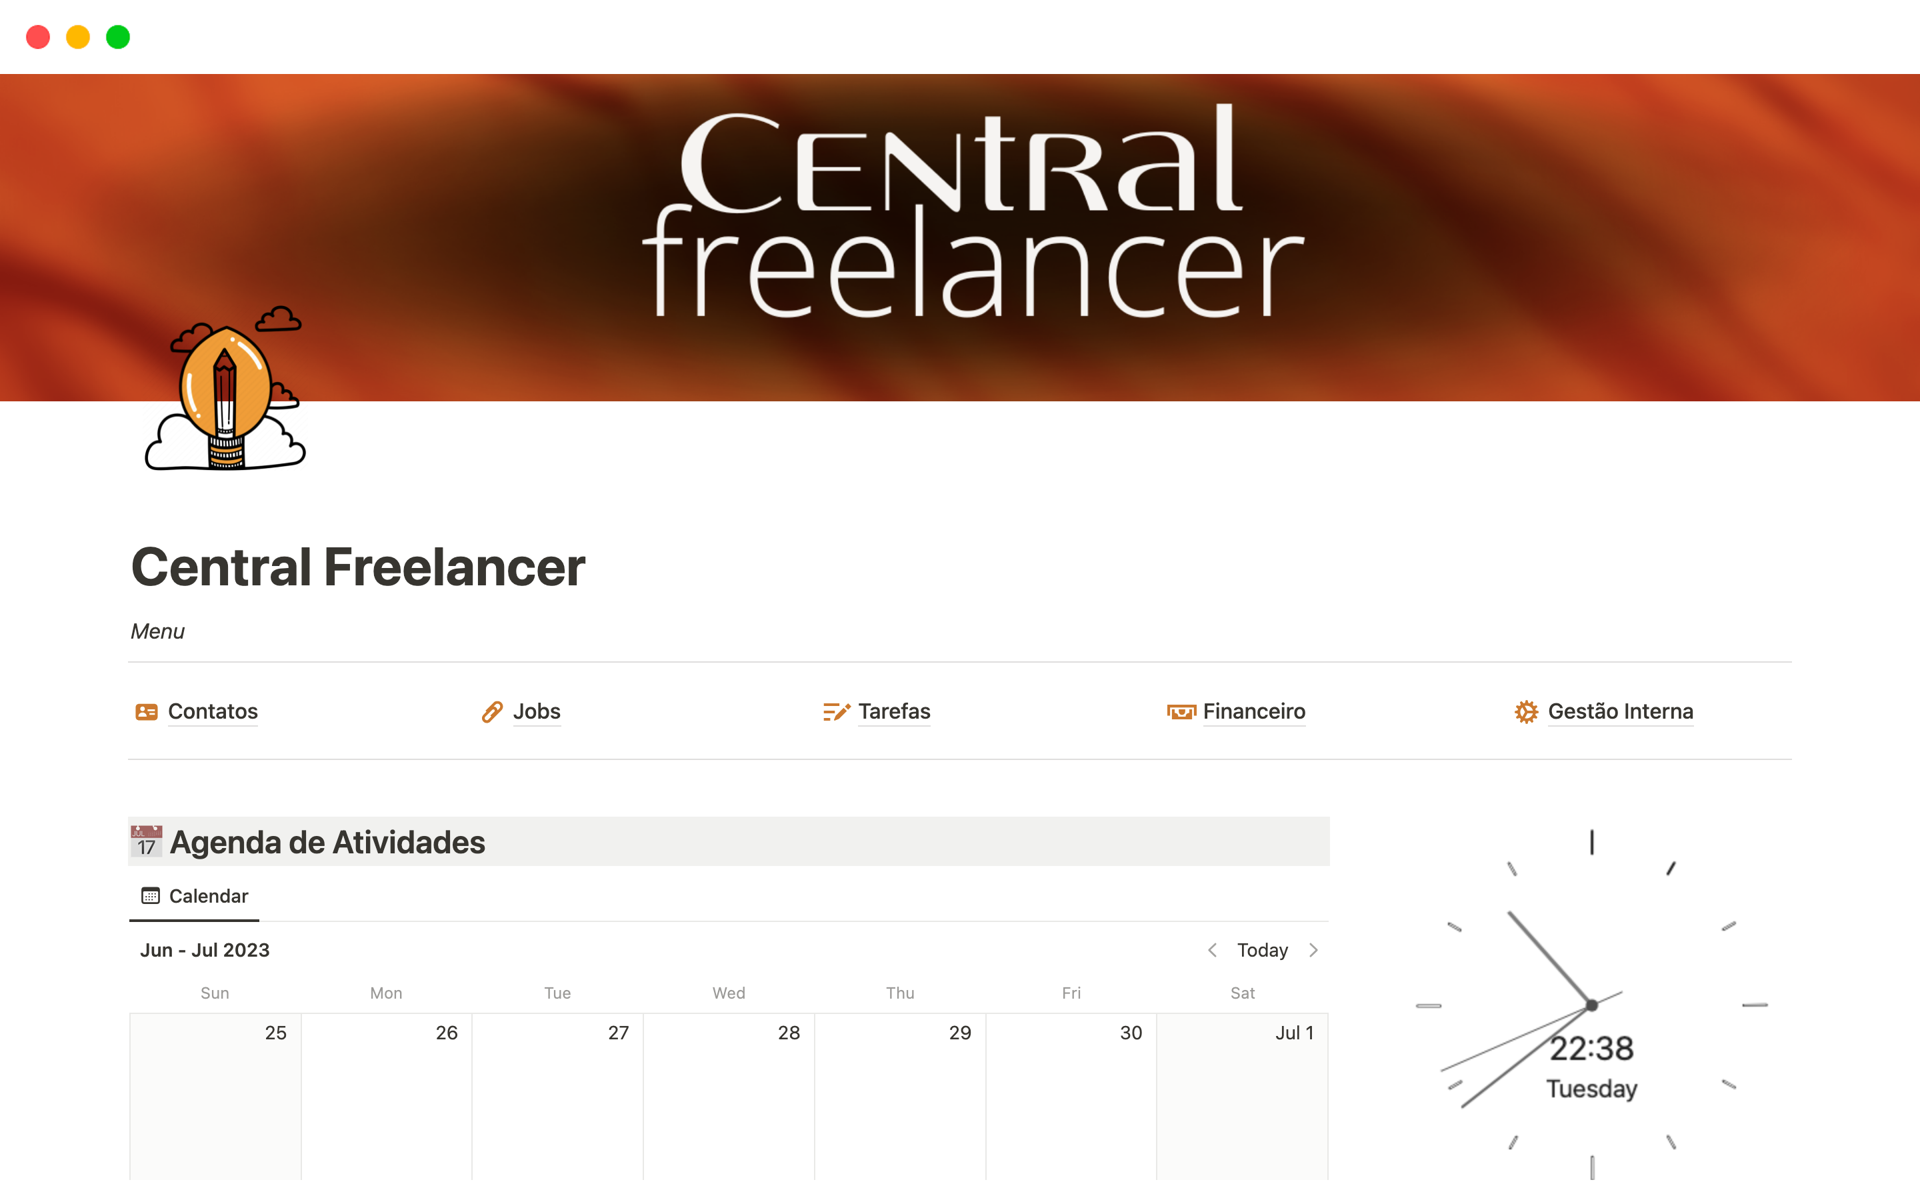 Vista previa de una plantilla para Central Freelancer